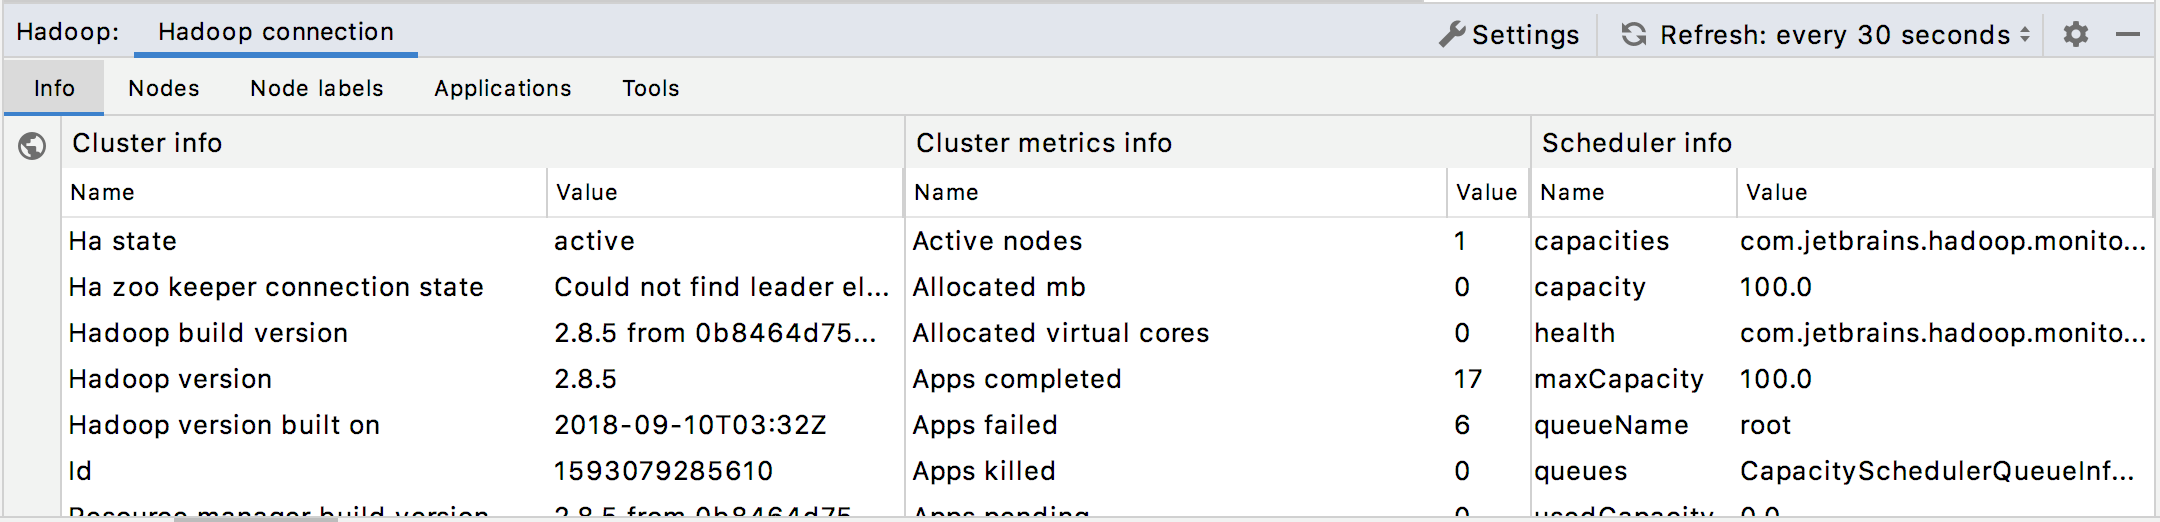 Hadoop monitoring: Cluster info